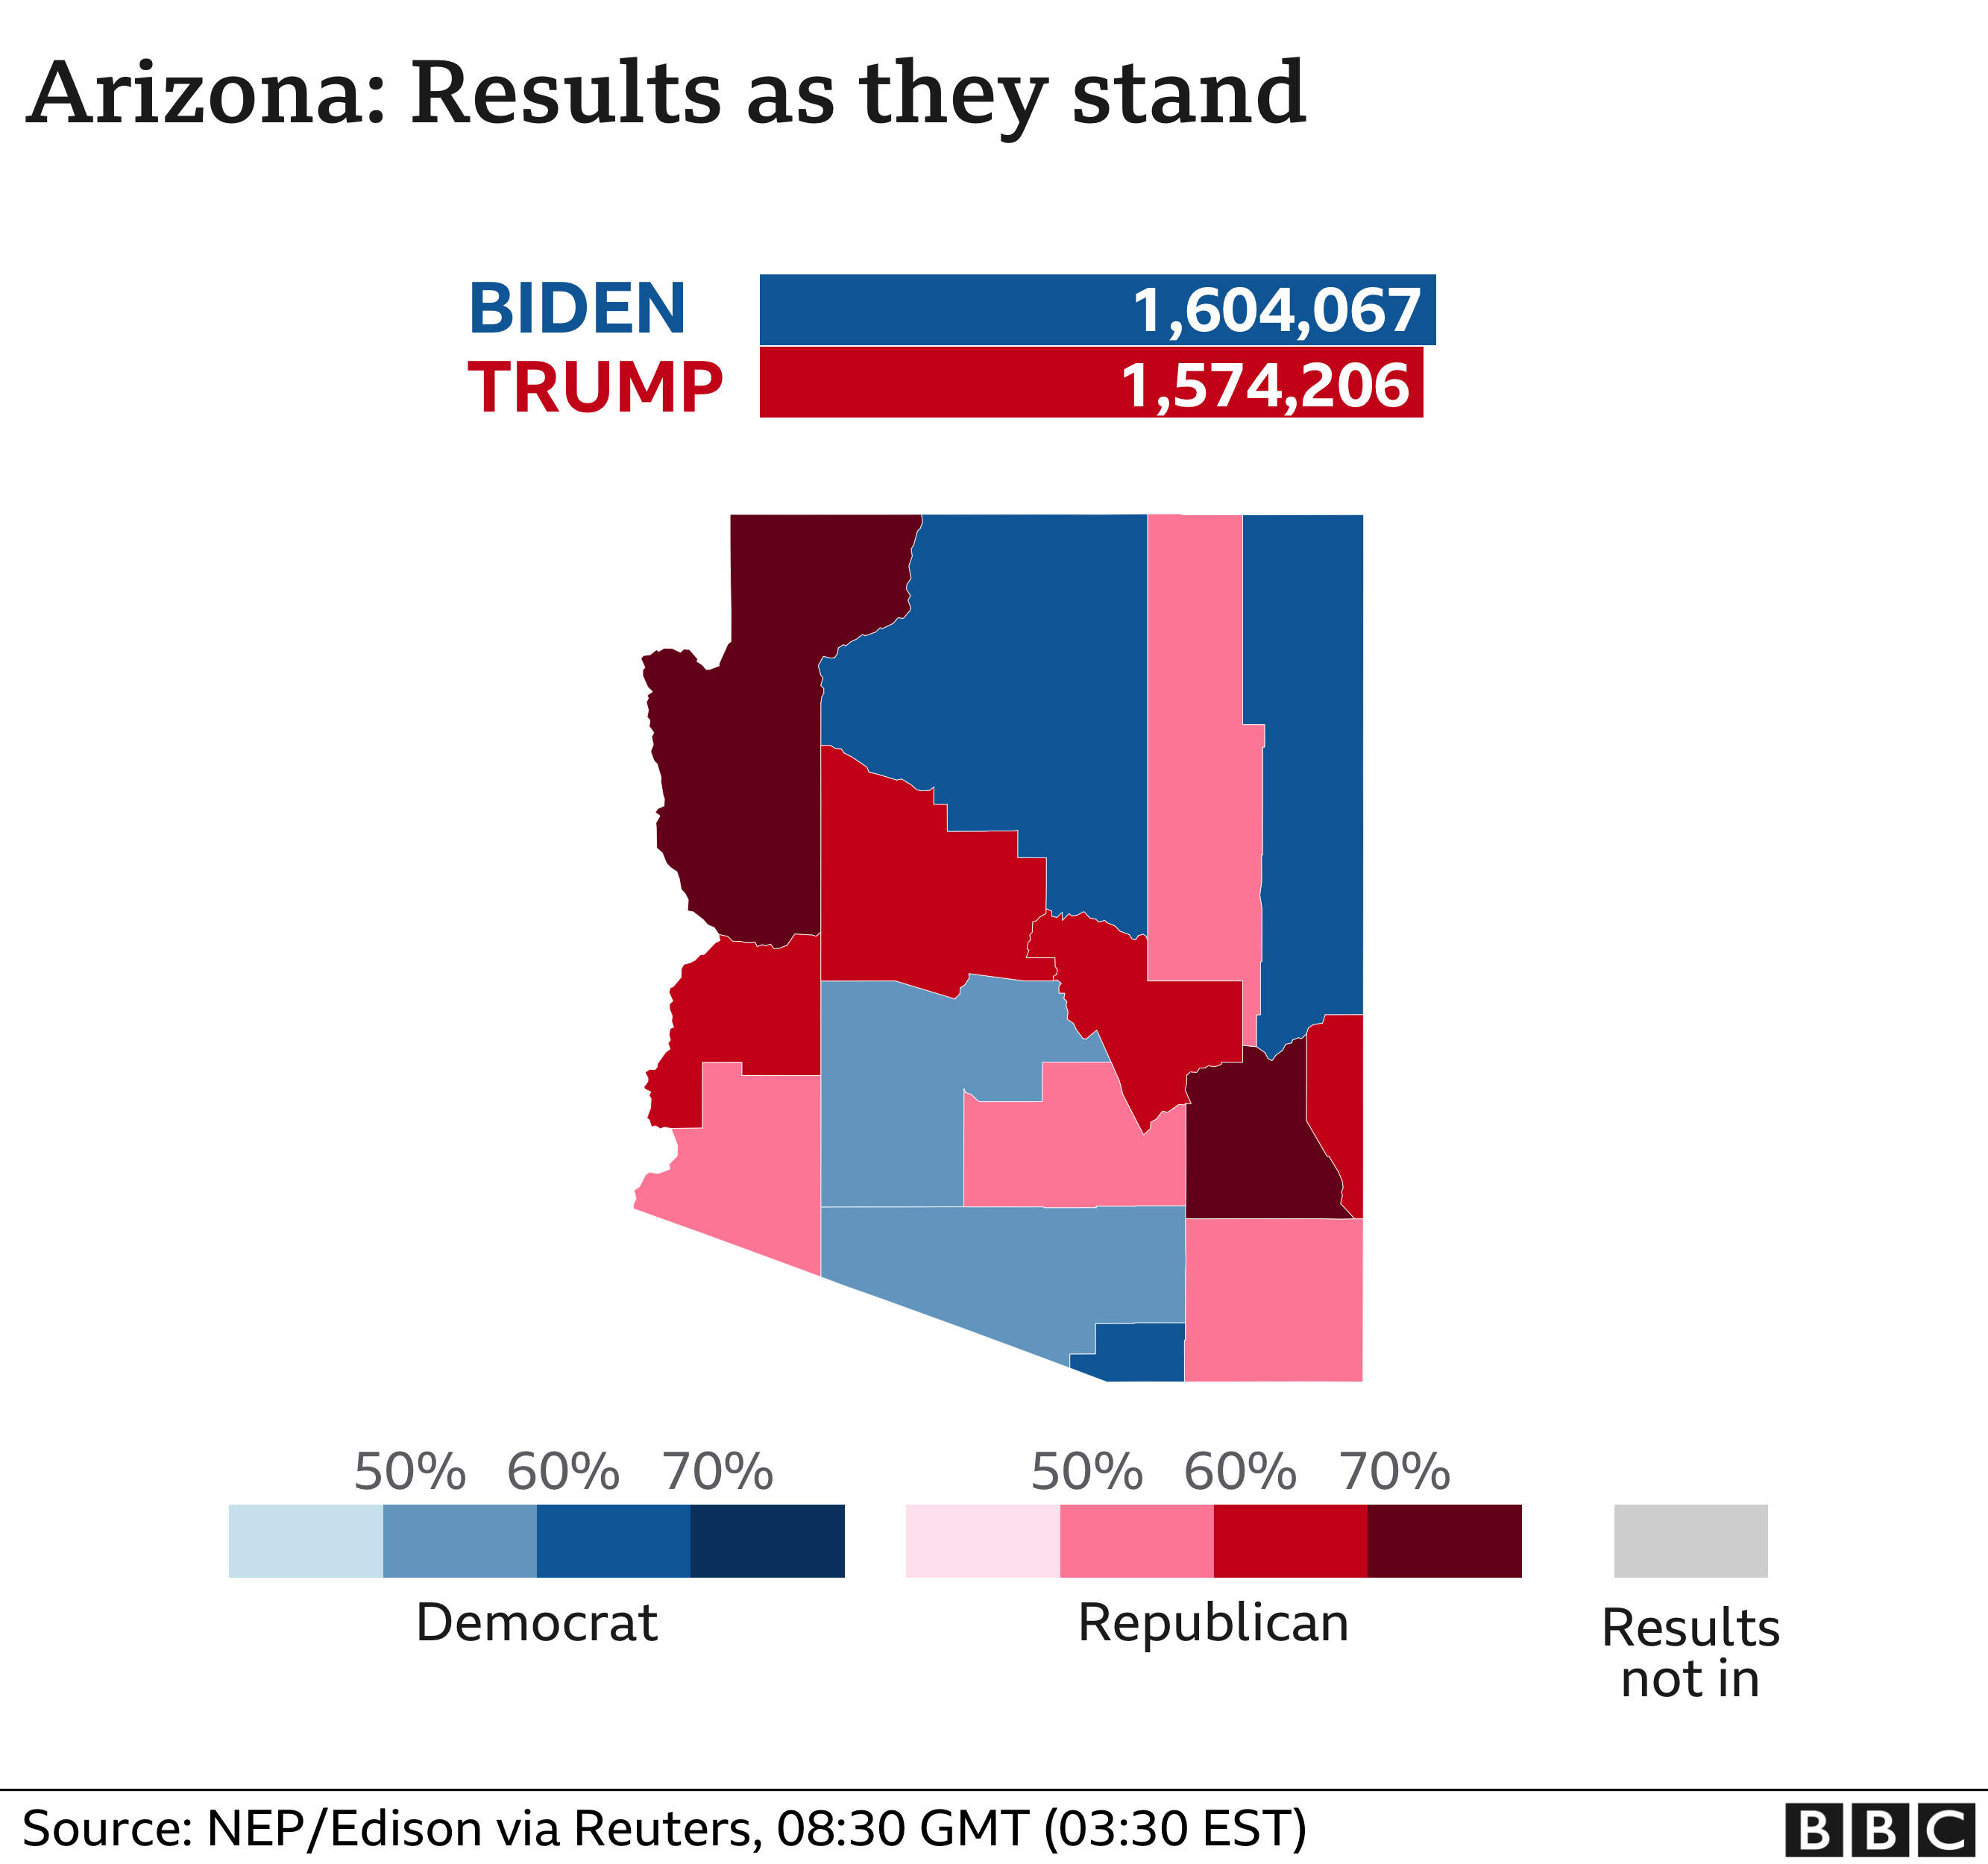 Grafico dei risultati dell'Arizona